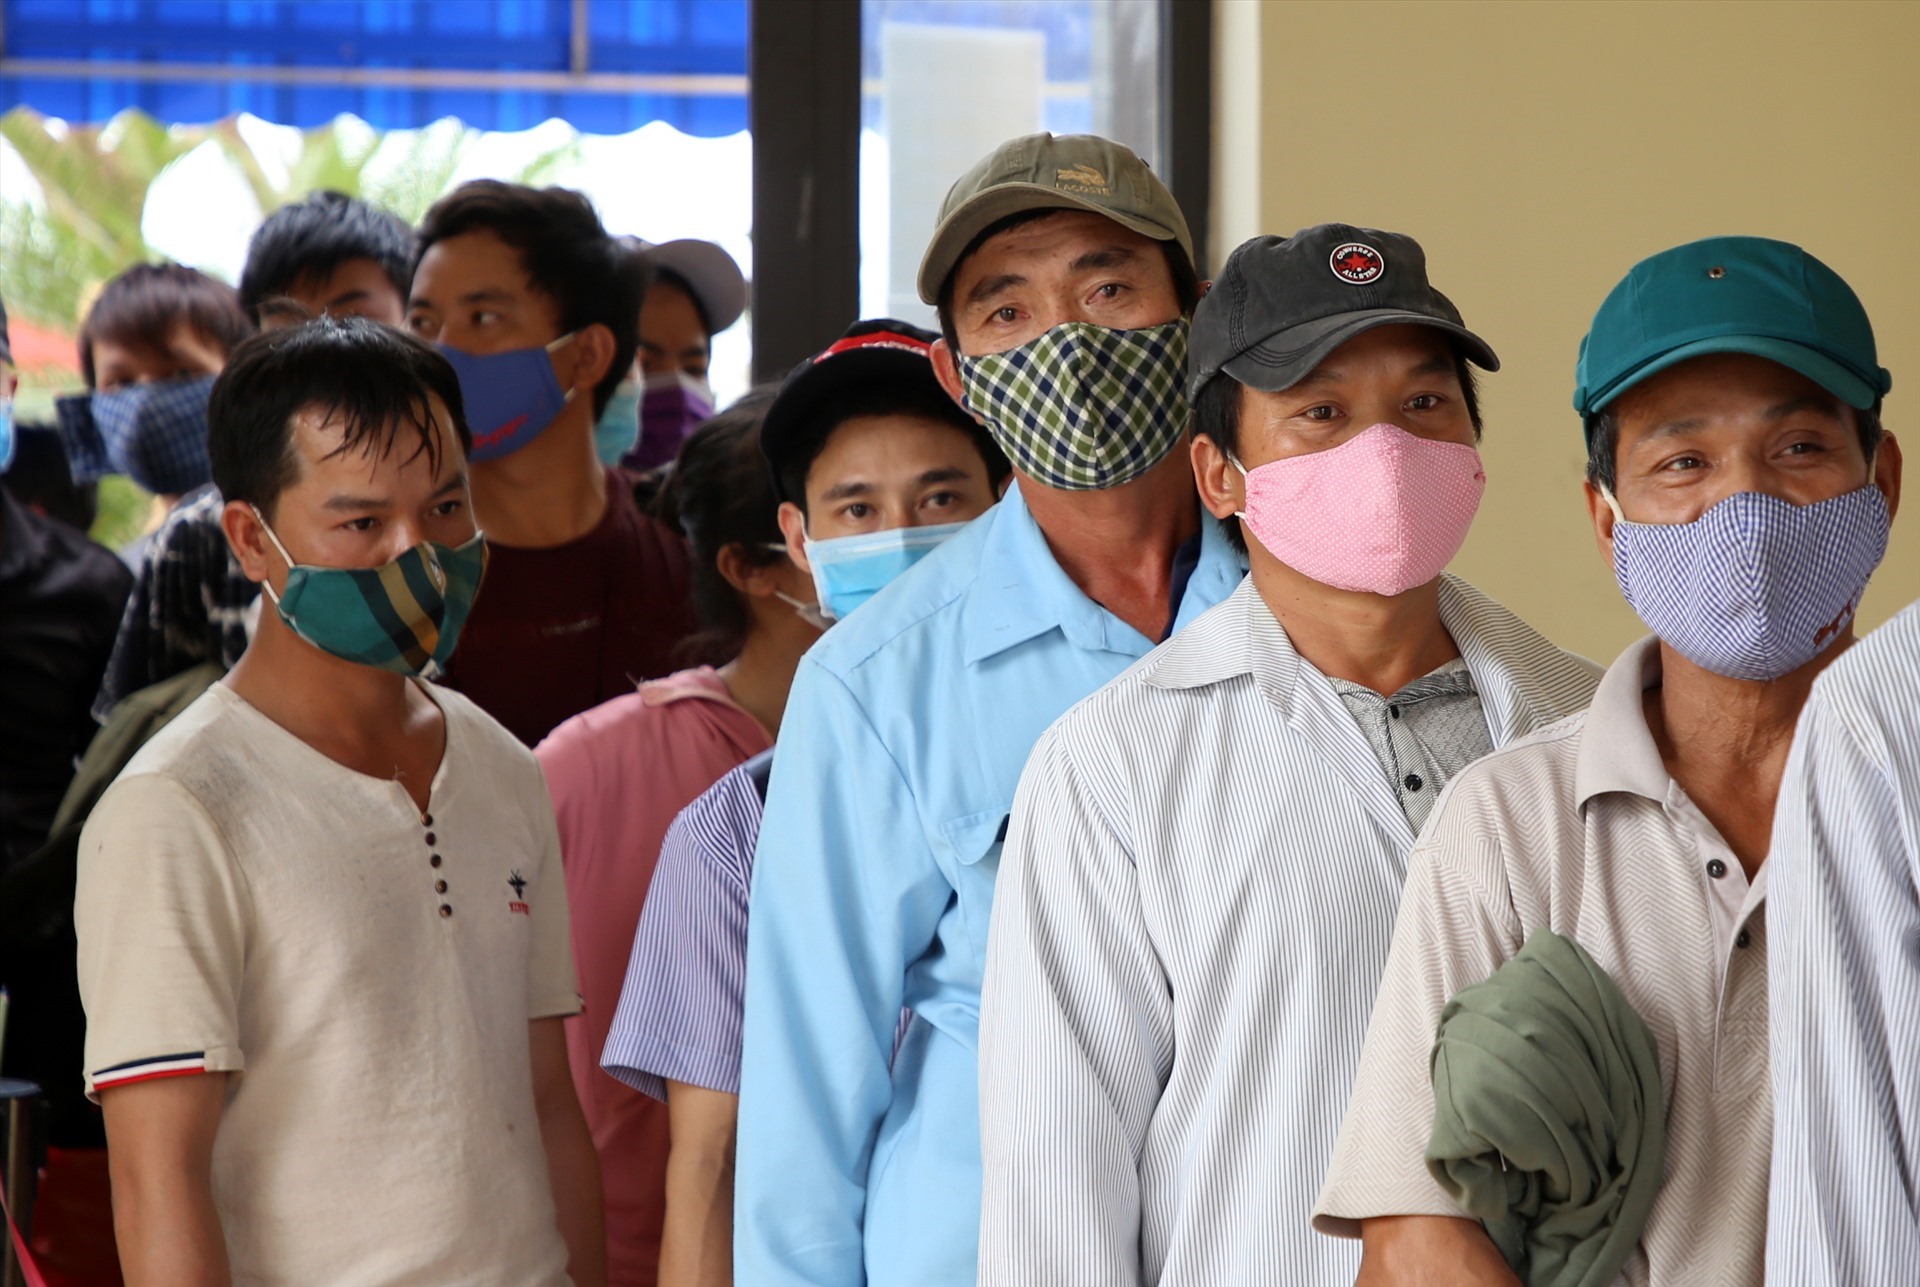 Những người đàn ông này làm việc ở Lào, nhưng trước thông tin dịch COVID-19 diễn biến phức tạp, họ đã trở về quê. Dù phải xếp hàng đợi làm thủ tục khá lâu, nhưng ai cũng chấp hành, vui mừng vì được về quê nhà an toàn.